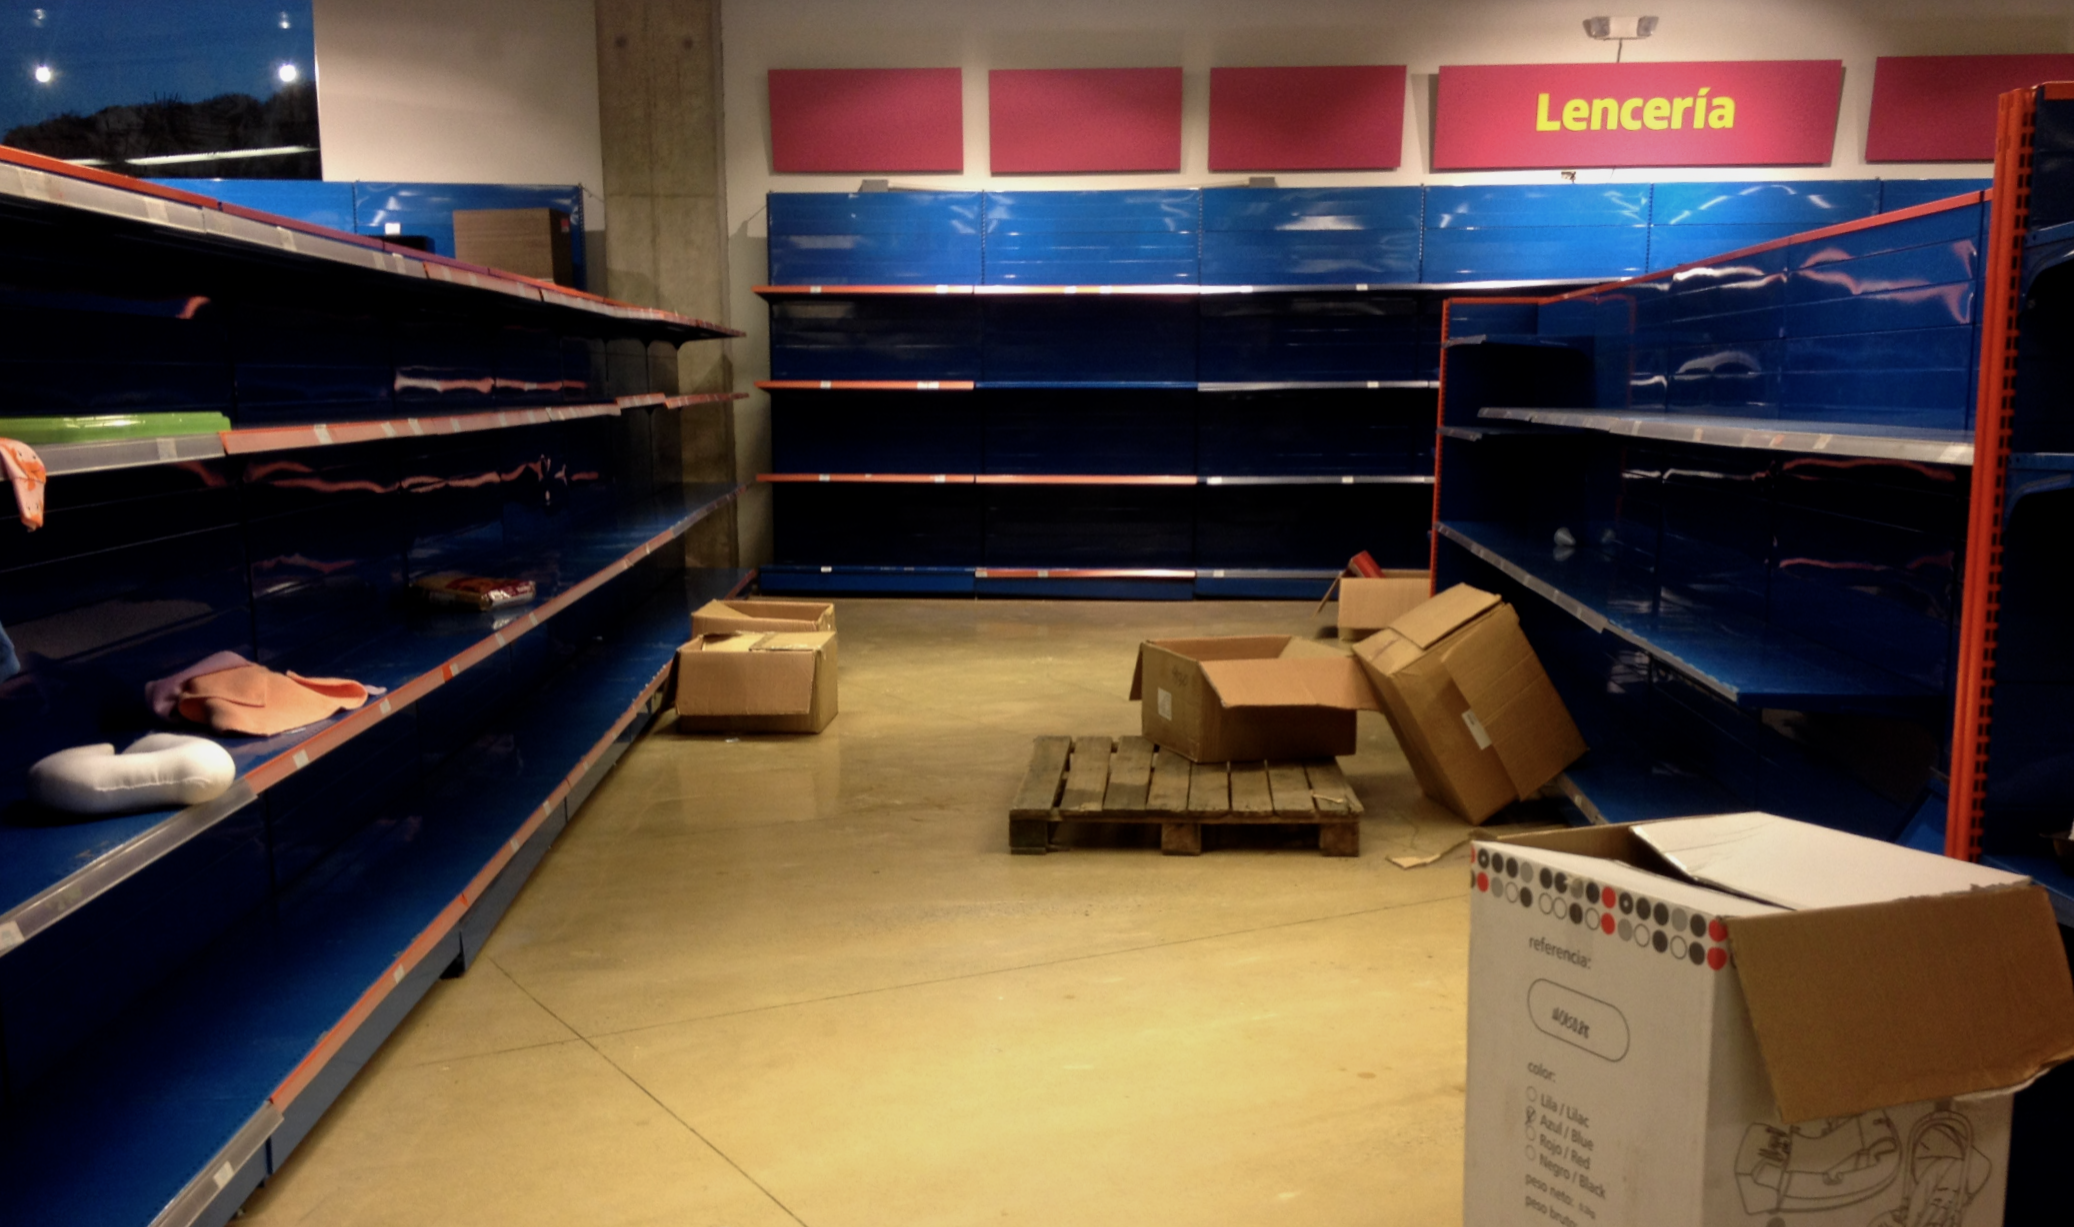 Food shortage in Venezuela 